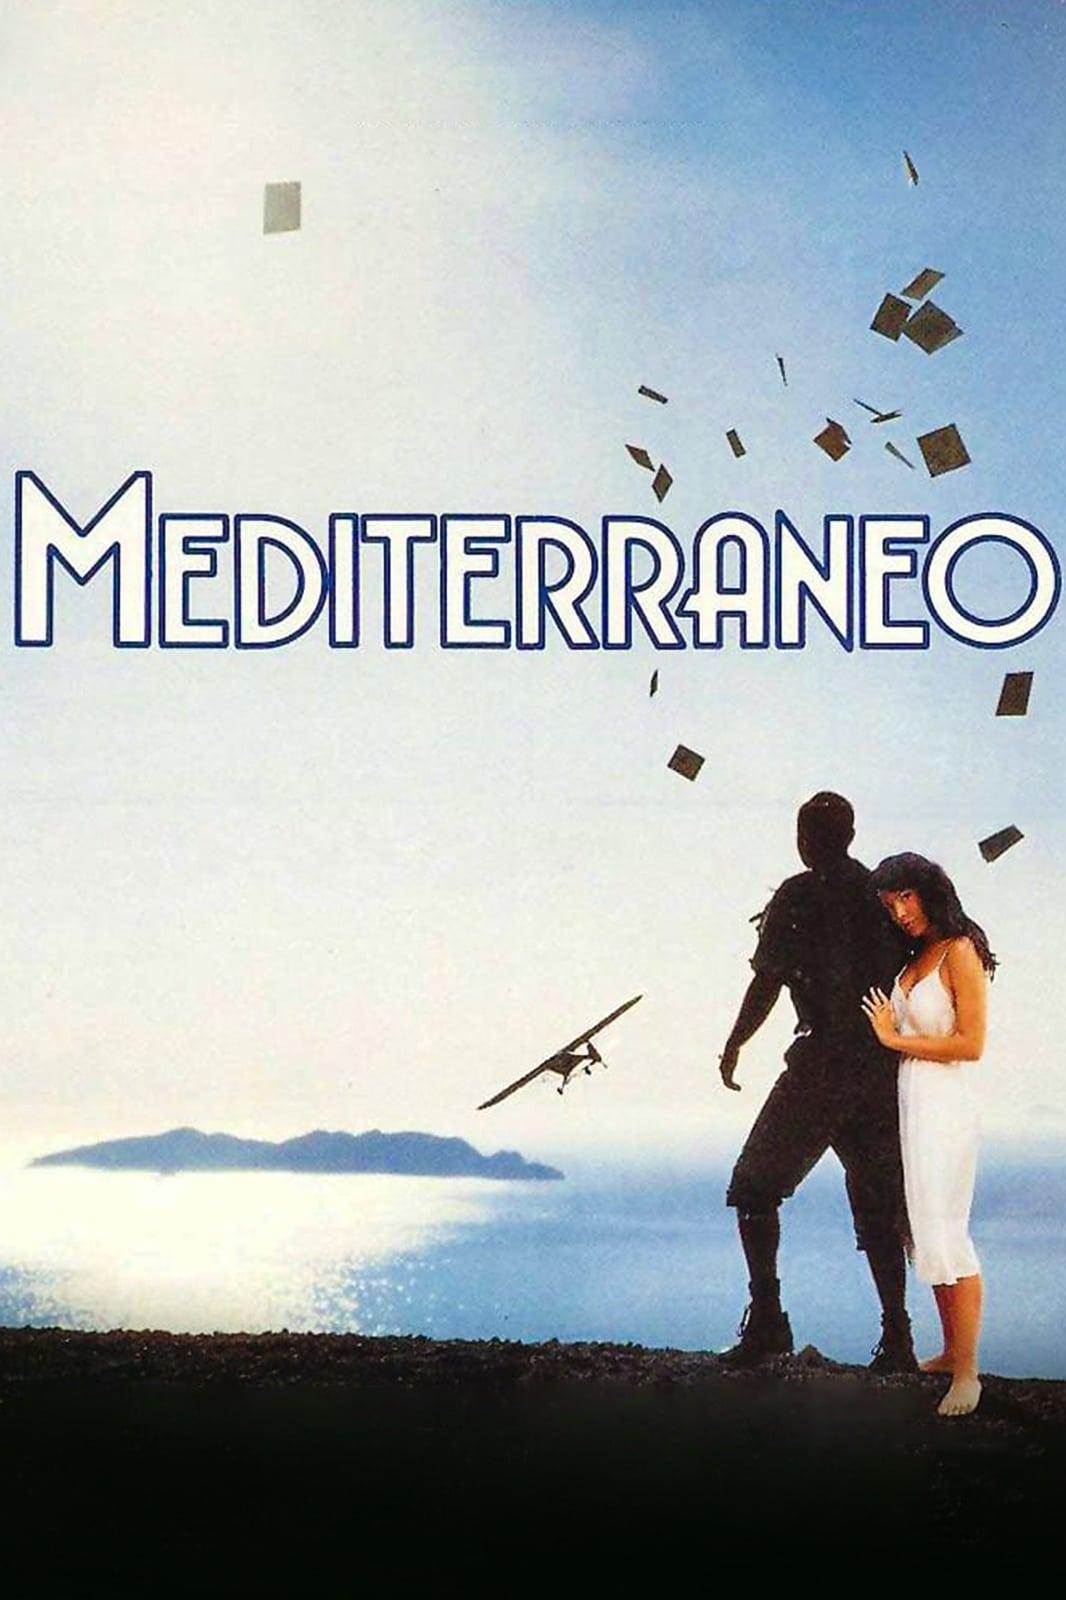 Mediterraneo poster